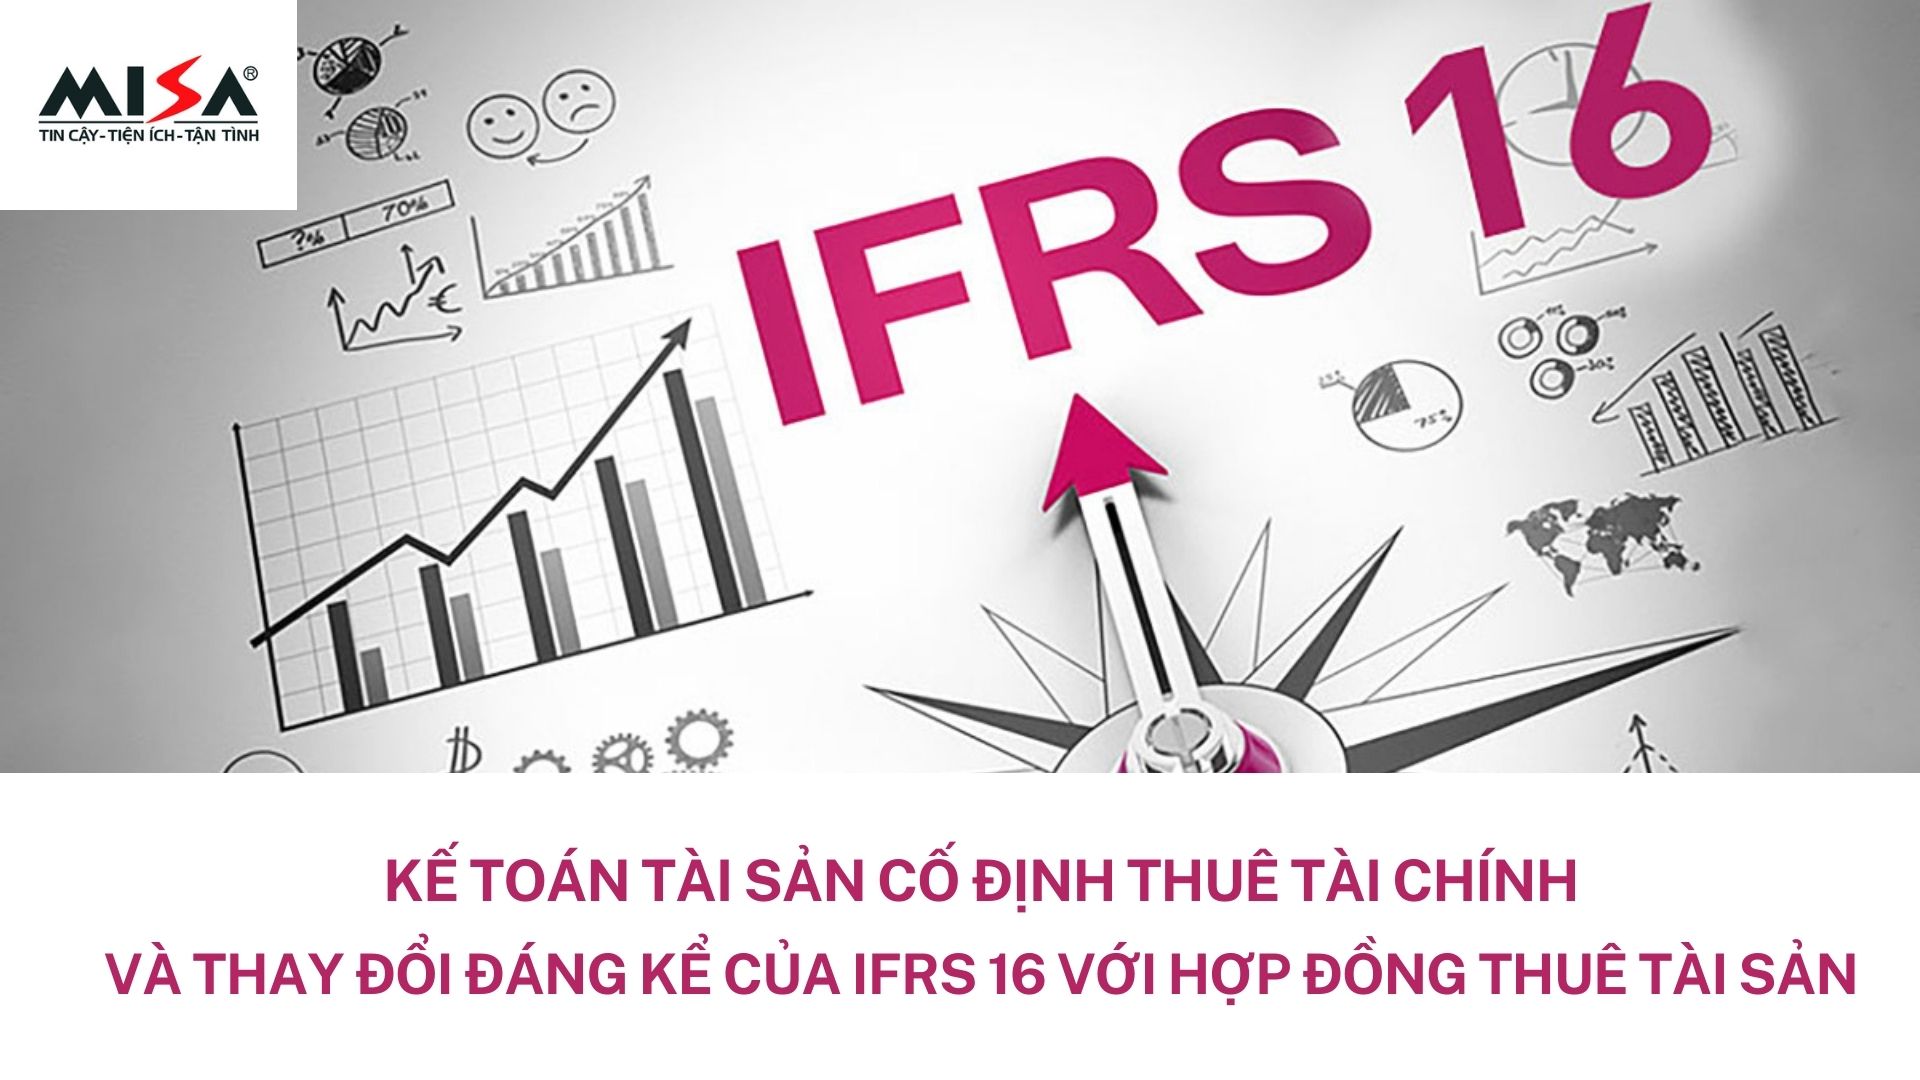 Thuê tài chính là gì? Những điều cần biết về thuê tài chính theo chuẩn mực IFRS